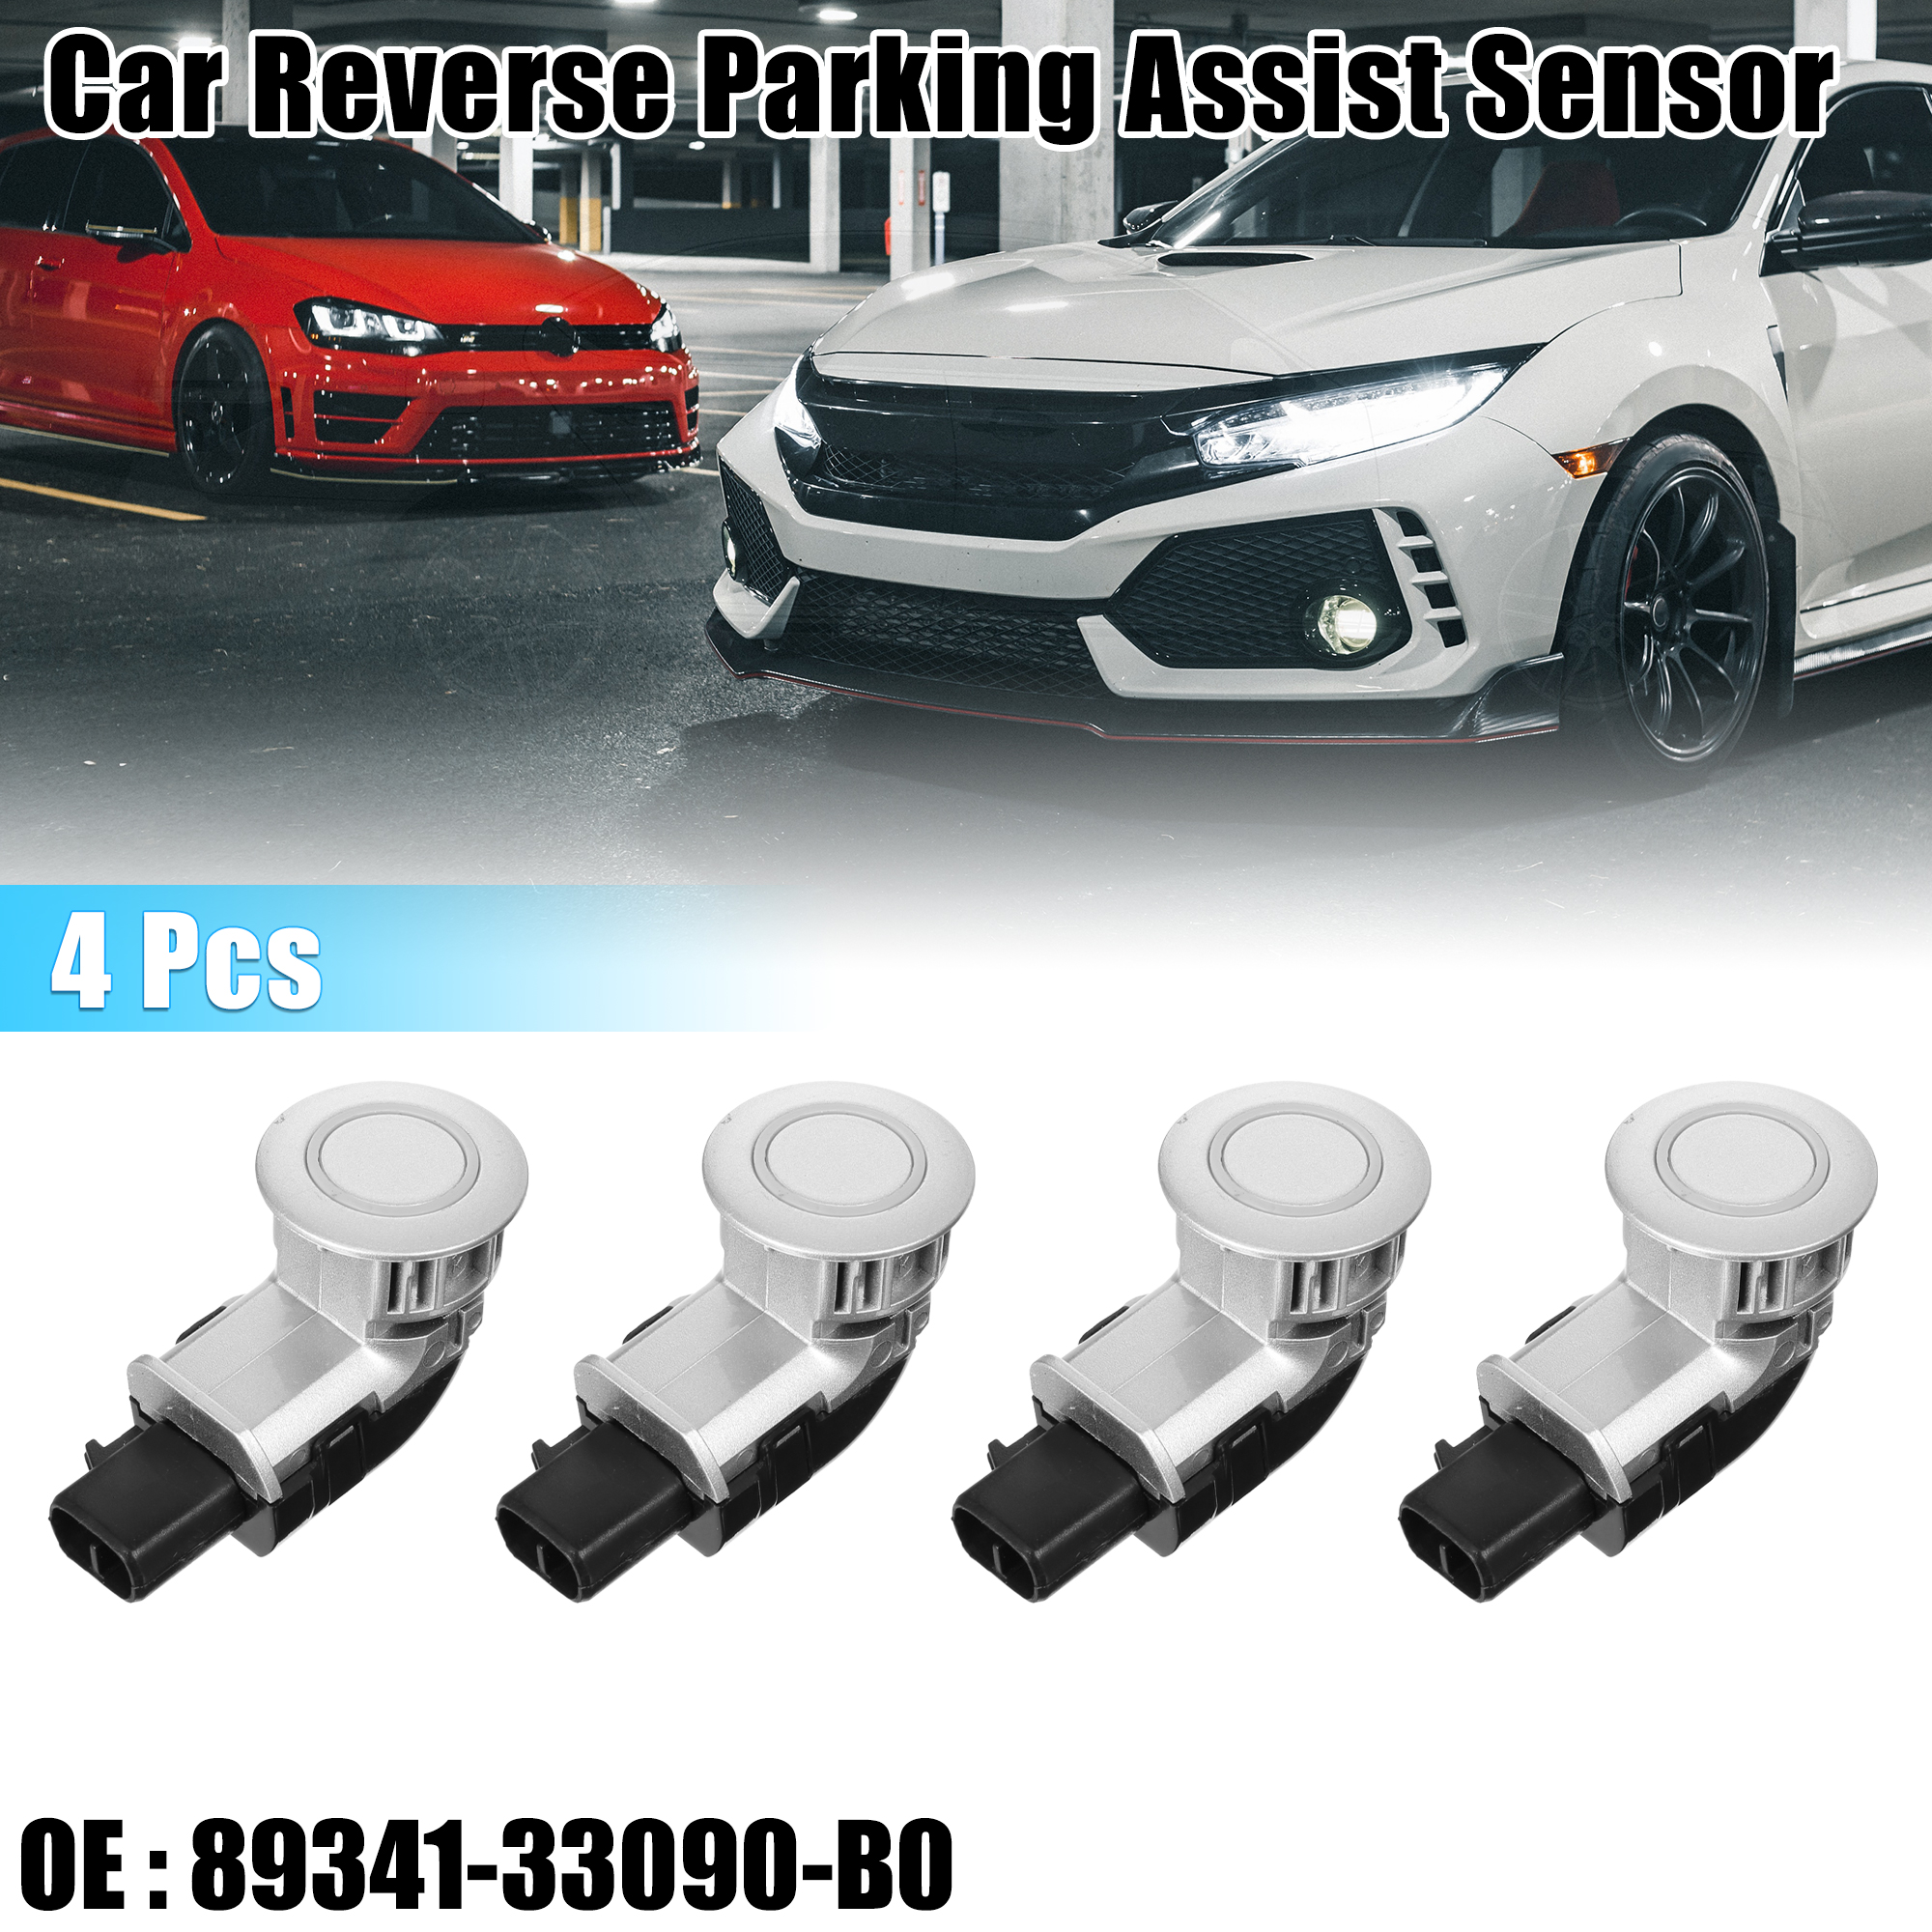 Unique Bargains 4 Pcs Reverse Parking Assist Sensor for Toyota Corolla E120 01-07 89341-33090-B0